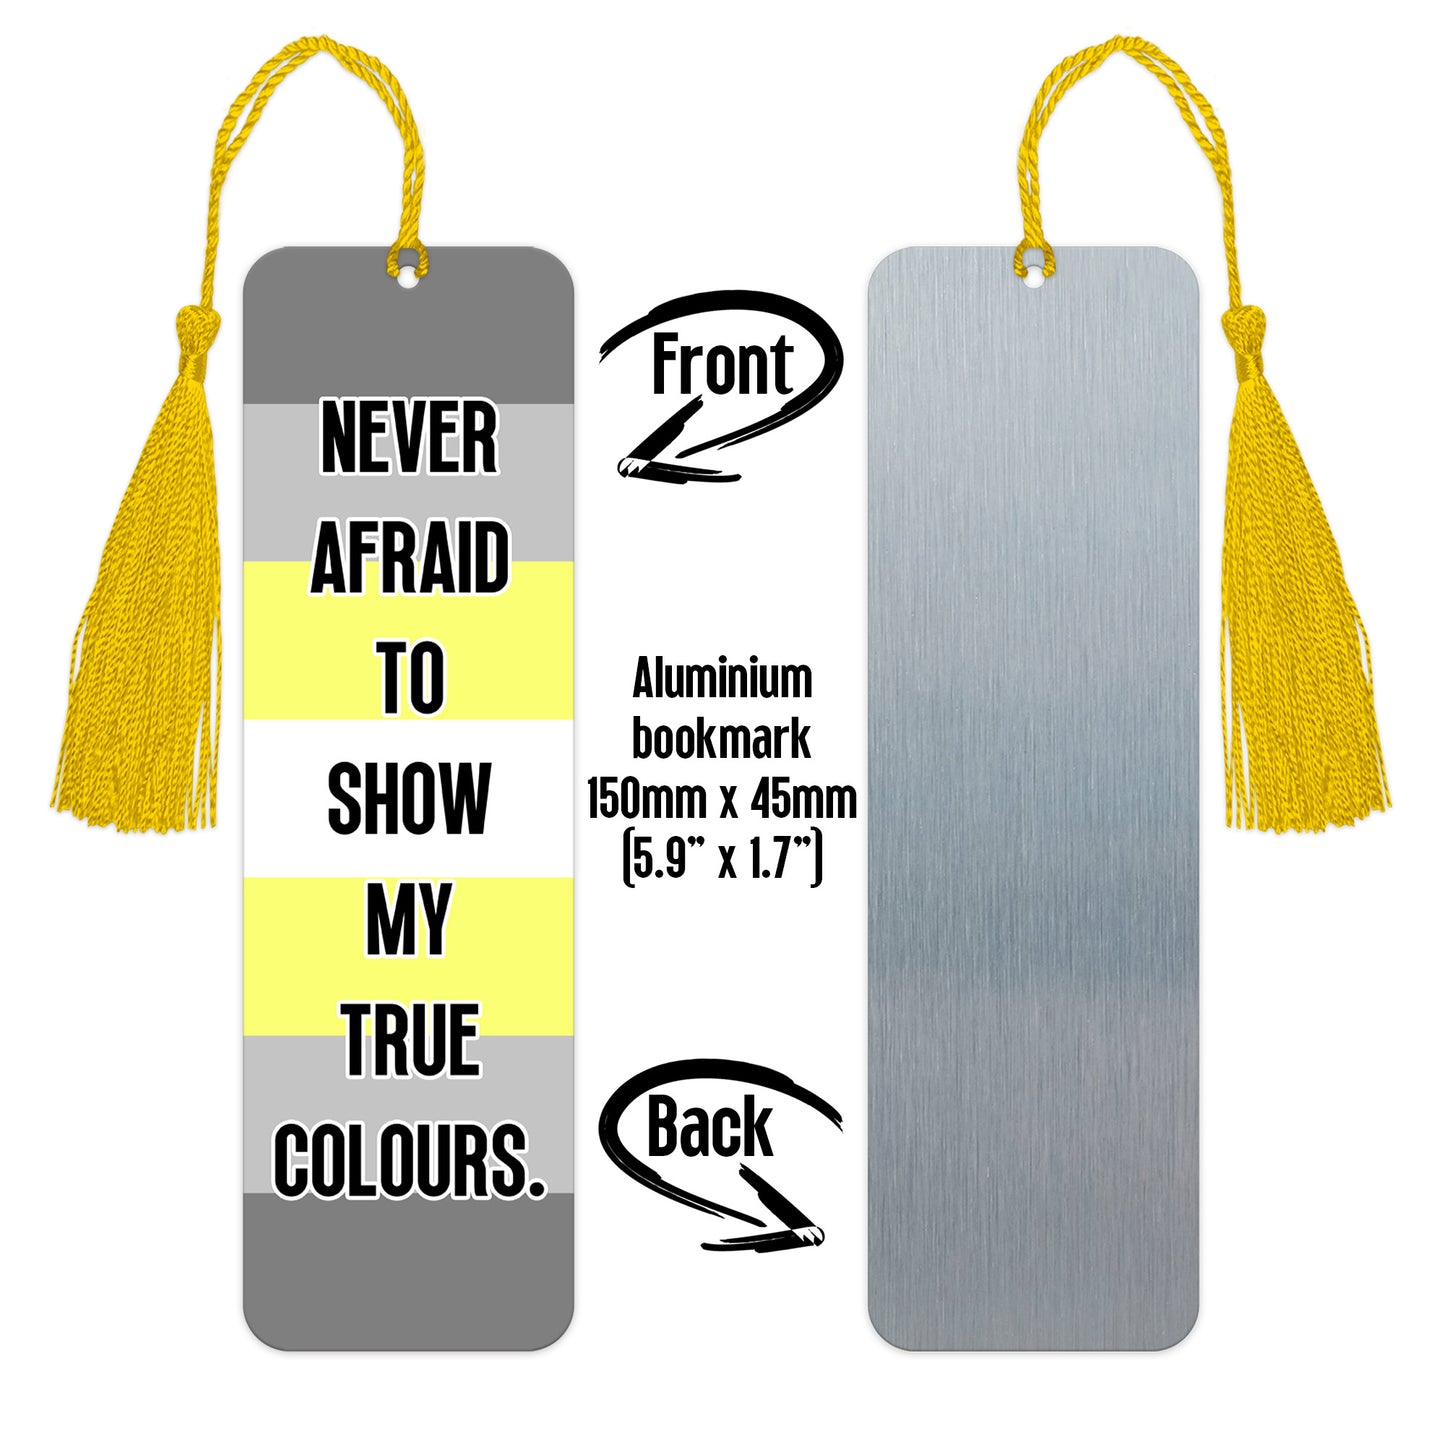 Demigender pride luxury aluminium bookmark never afraid to show my true colours